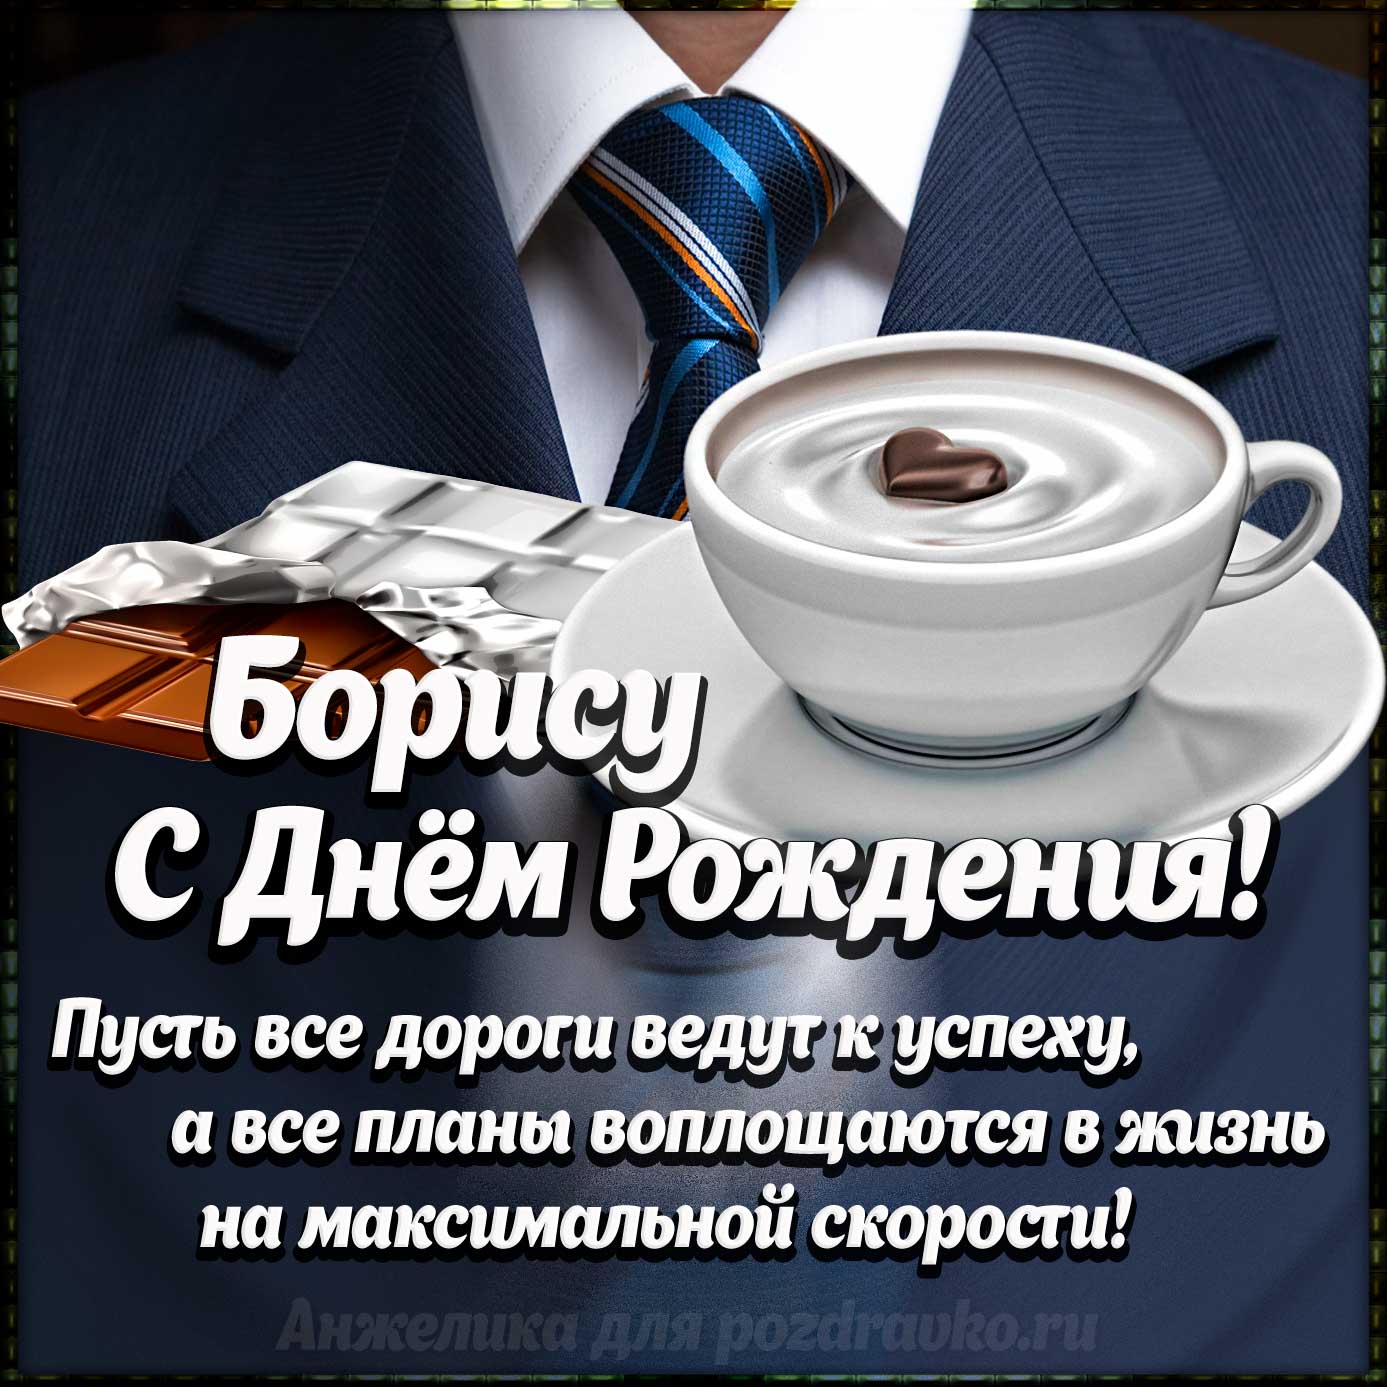 Открытка - Борису с Днем Рождения с галстуком, кофе и пожеланием. Скачать бесплатно или отправить картинку.